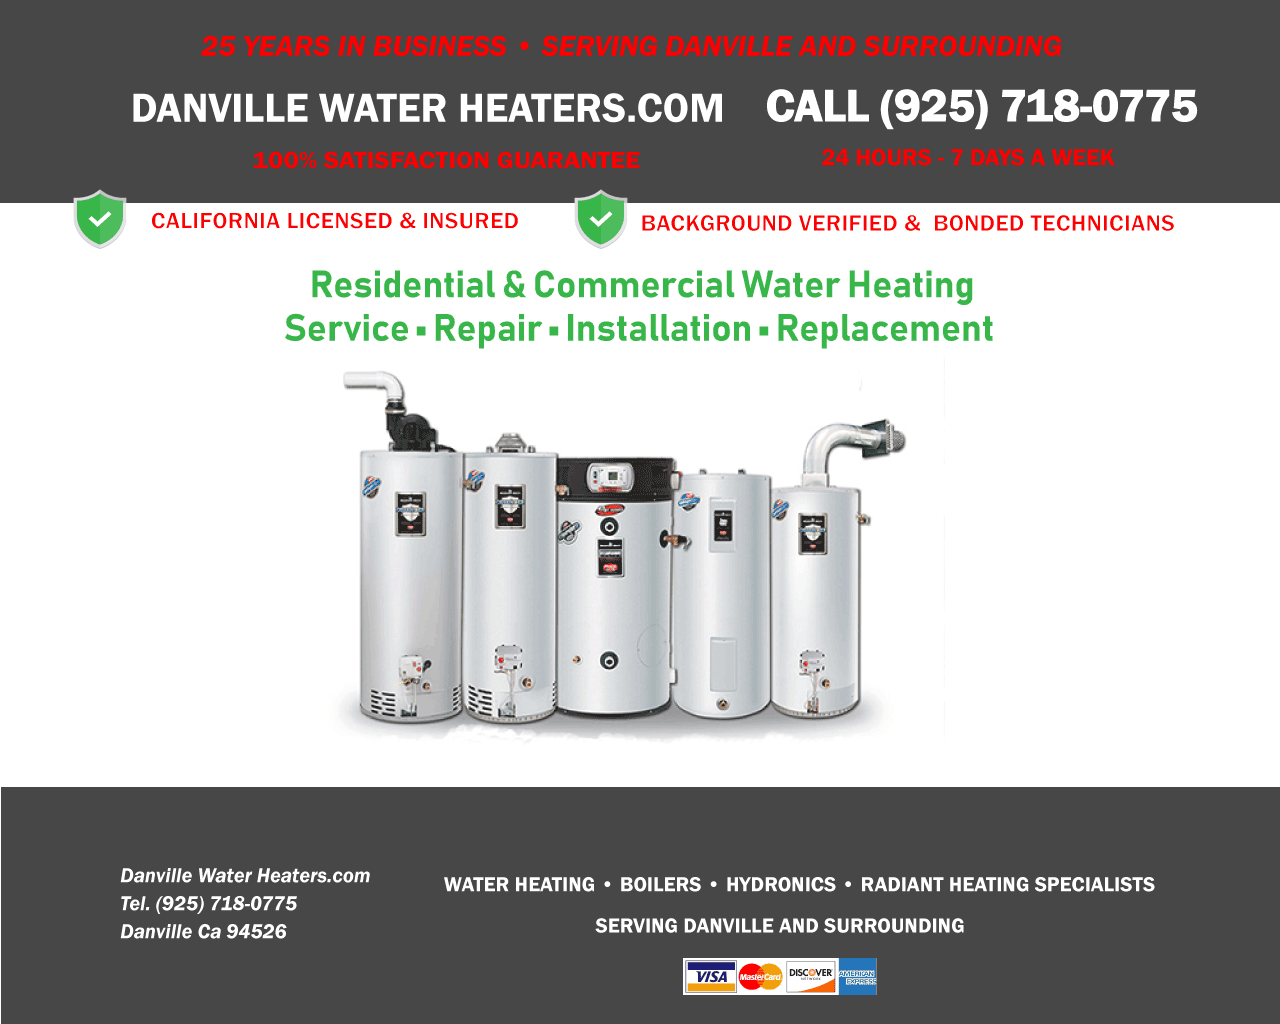 Danville Water Heaters